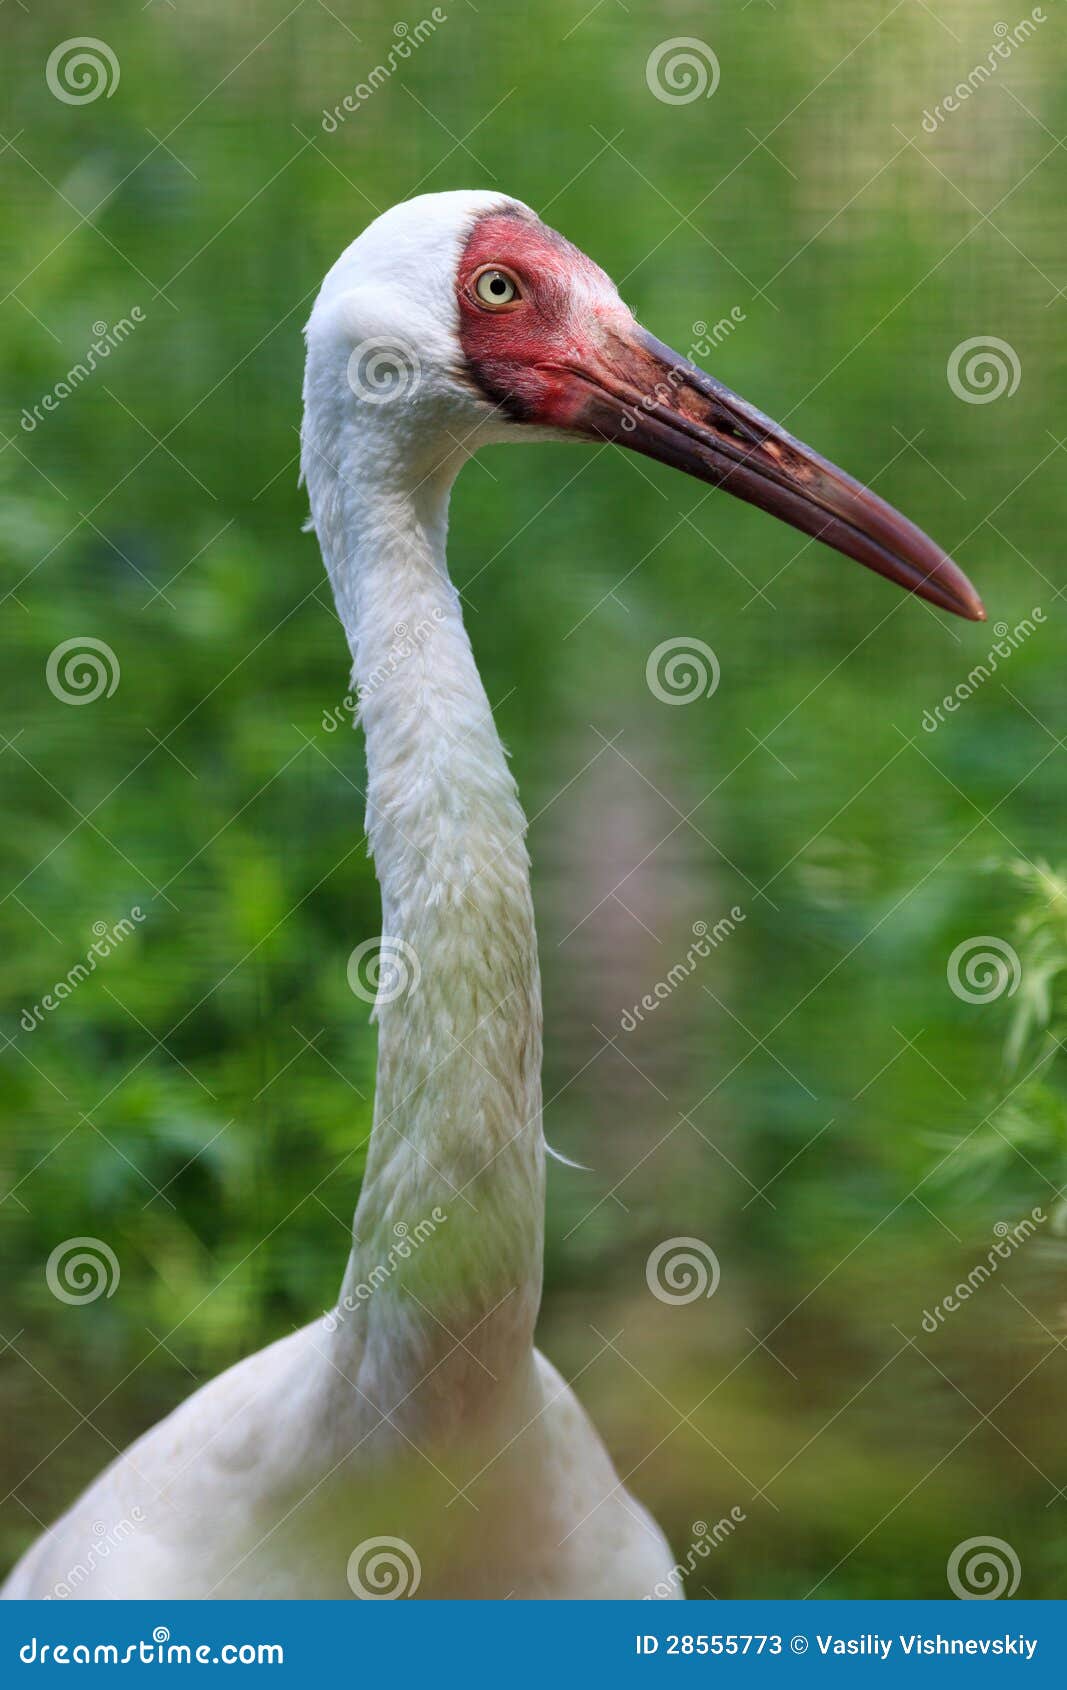 grus leucogeranus, siberian white crane.